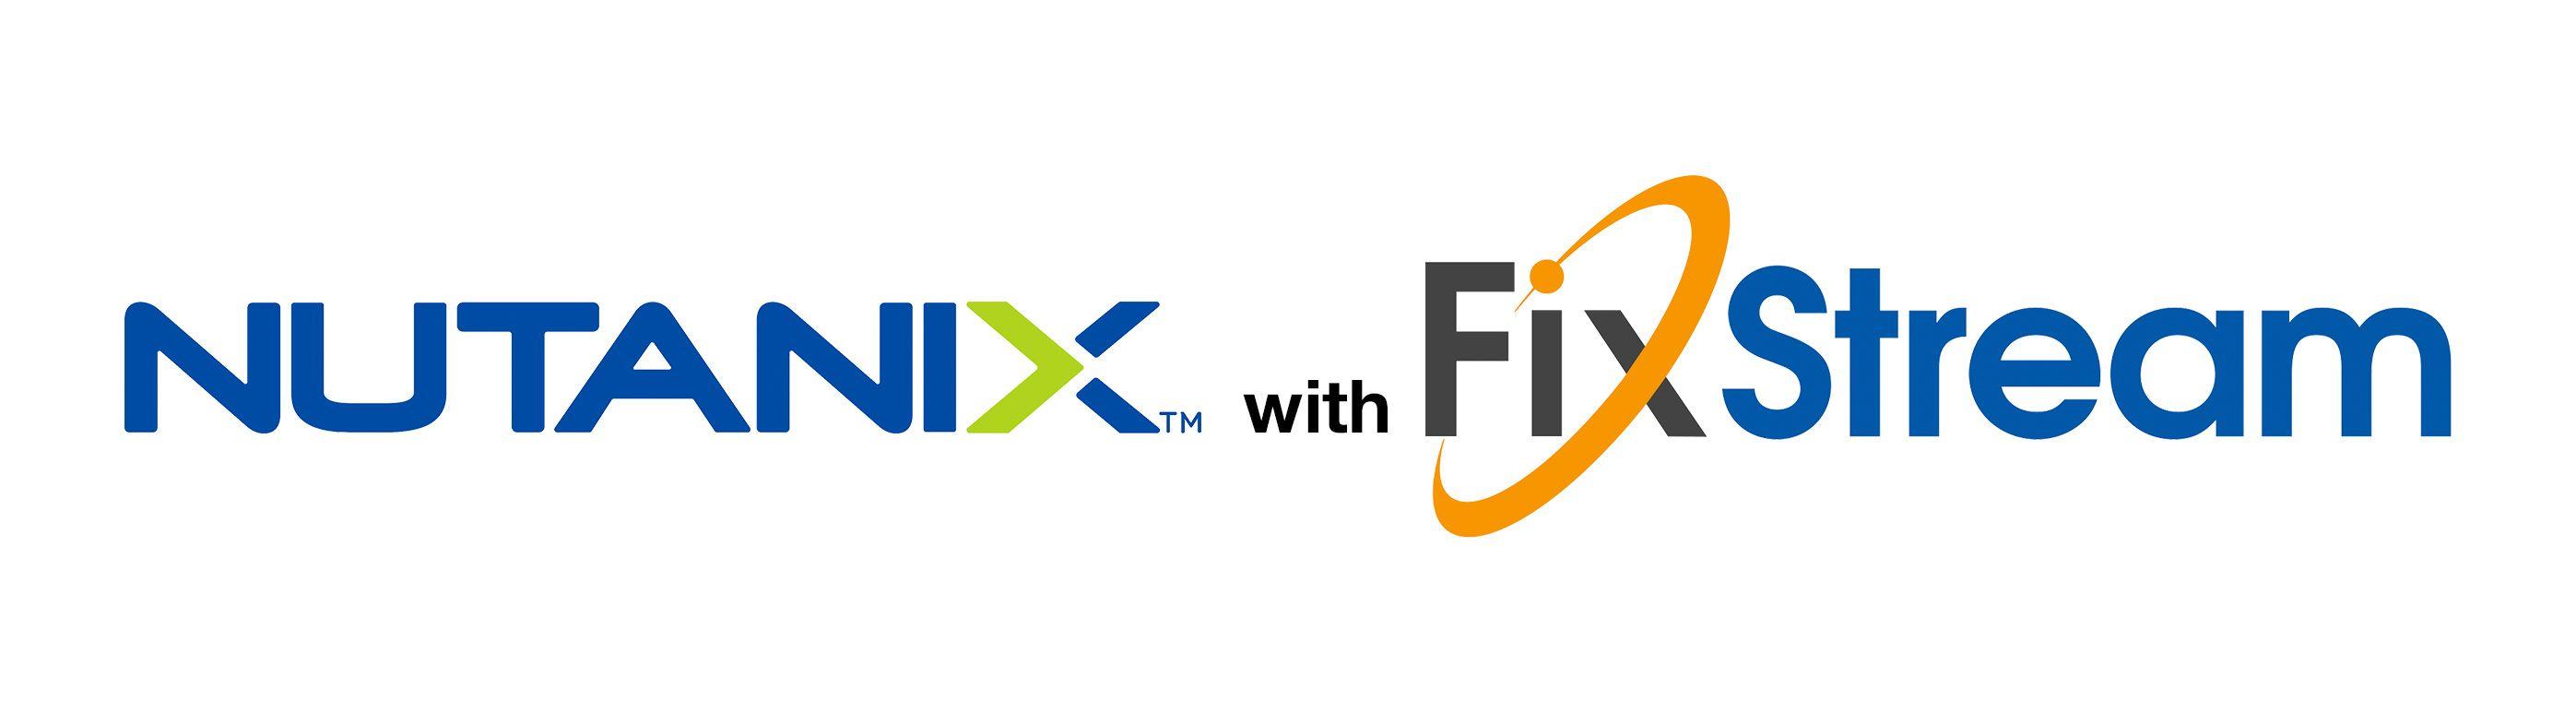 Nutanix Logo - nutanix-with-fixstream-logo-4 » FixStream